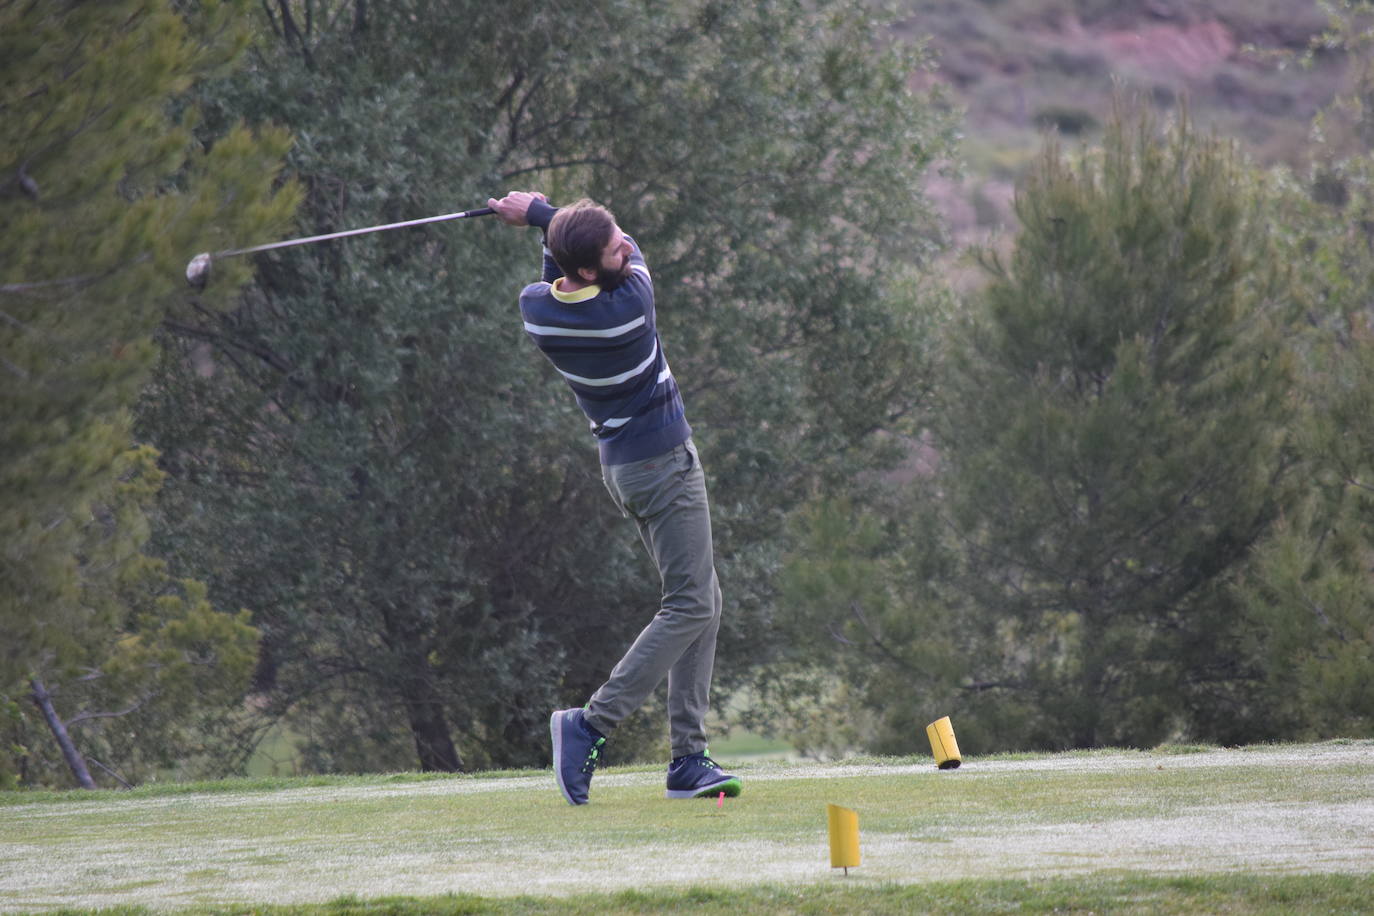 Los participantes el el torneo Bodegas Marco Real de la Liga de Golf y Vino disfrutaron de un gran día de golf en El Campo de Logroño.